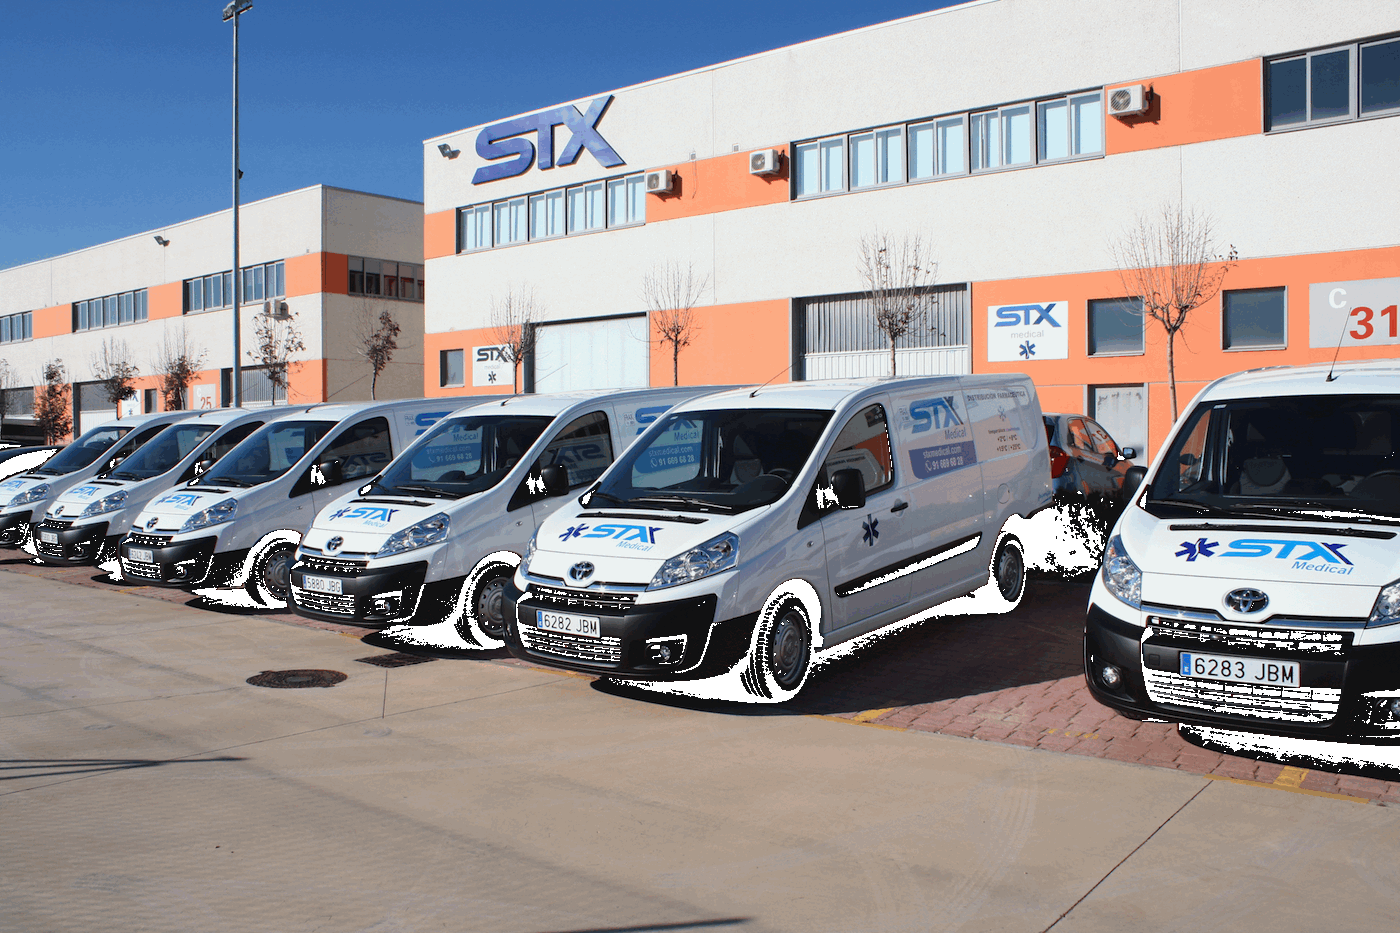 STX Medical inaugura un nuevo centro logistico en Vigo